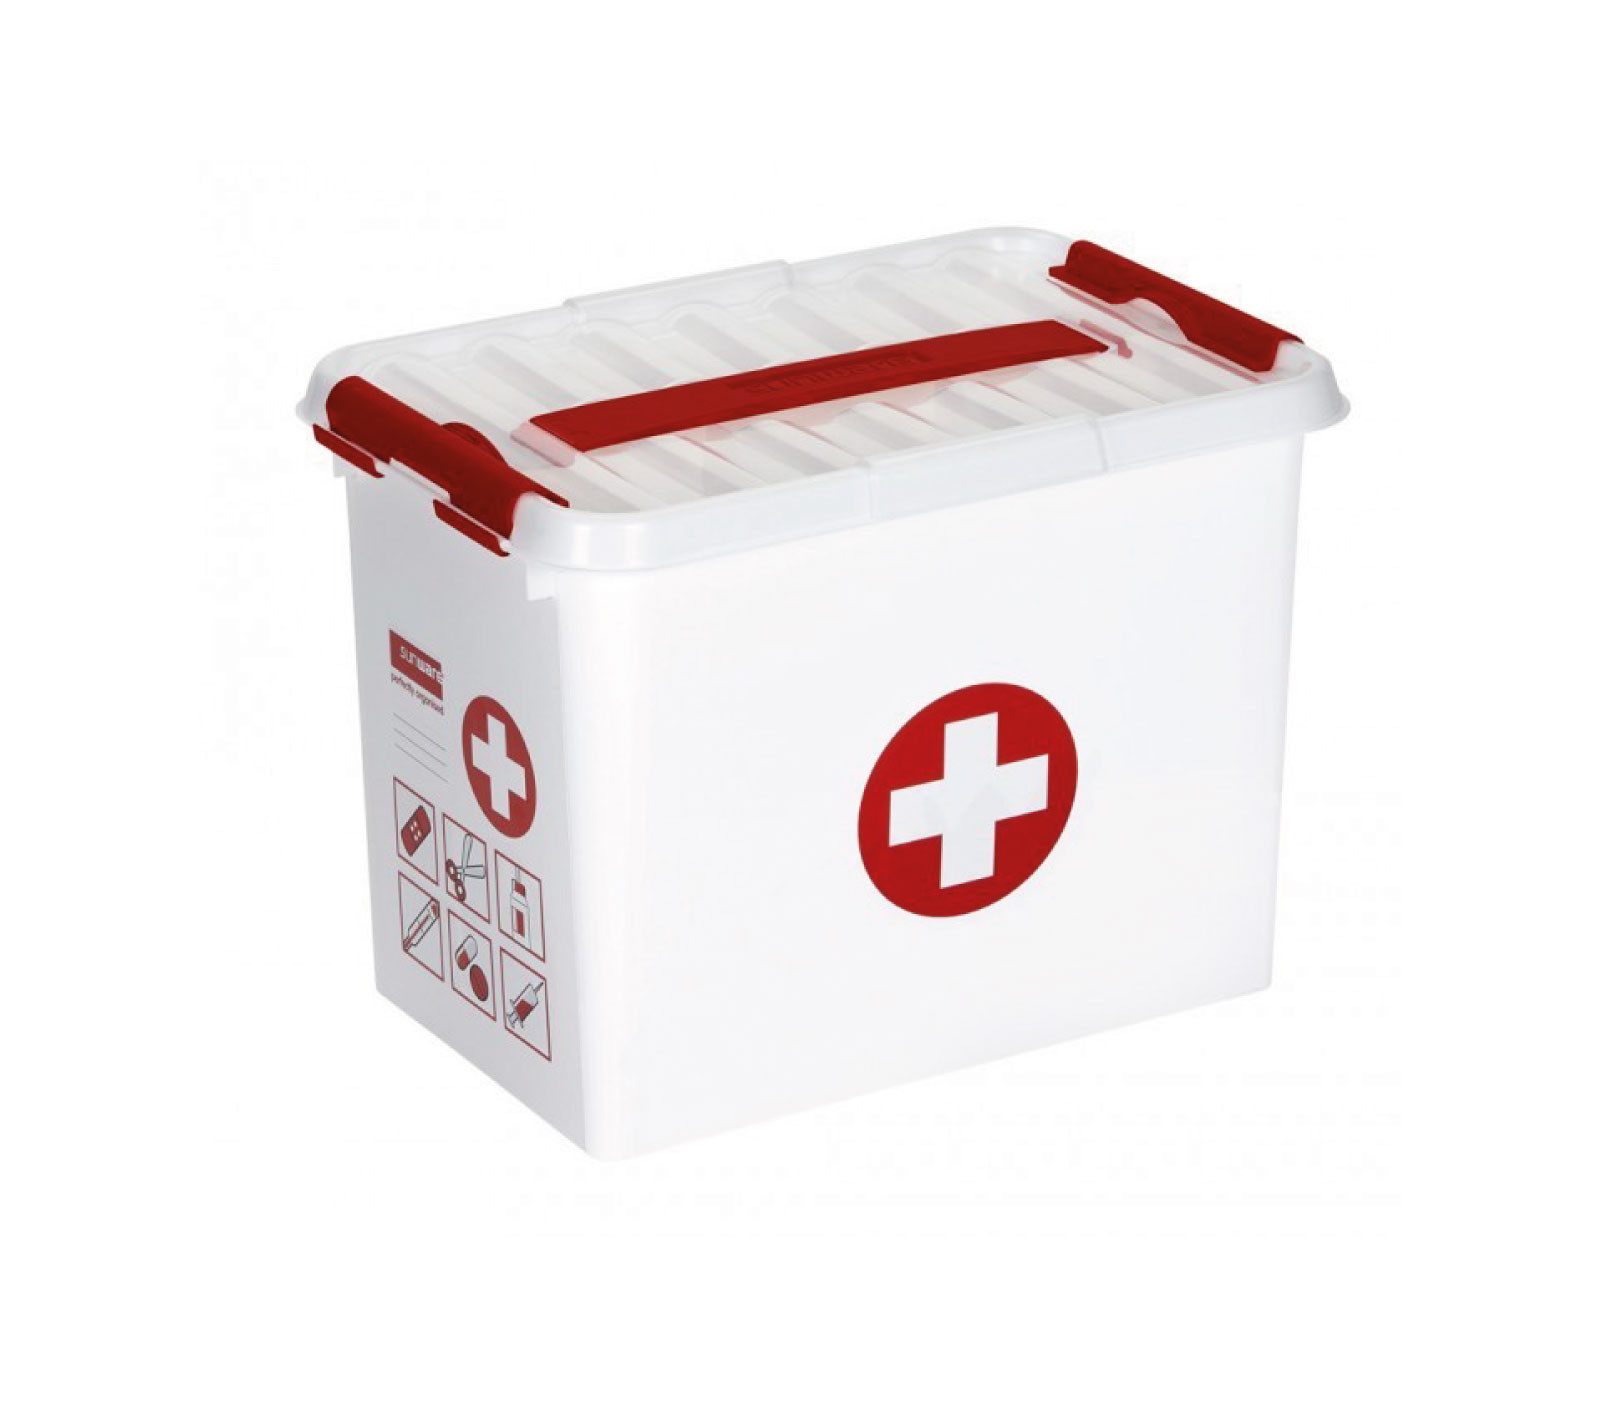 Sunware Q-line EHBO doos met inzet 9L wit rood